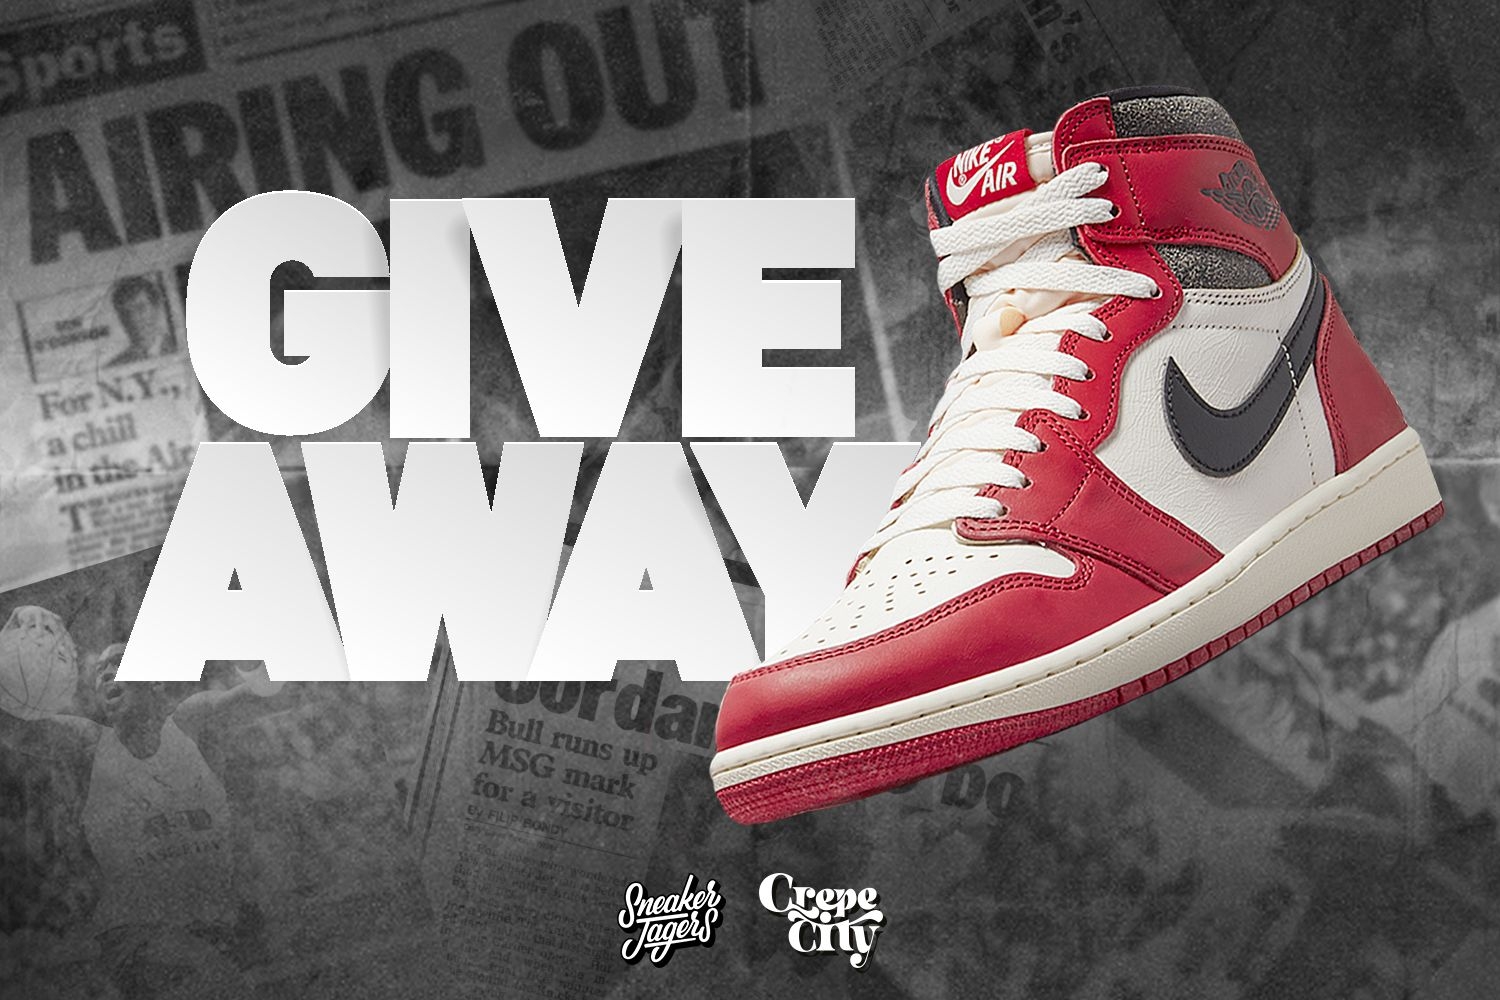 Sneakerjagers und Crepe City präsentieren exklusives Giveaway